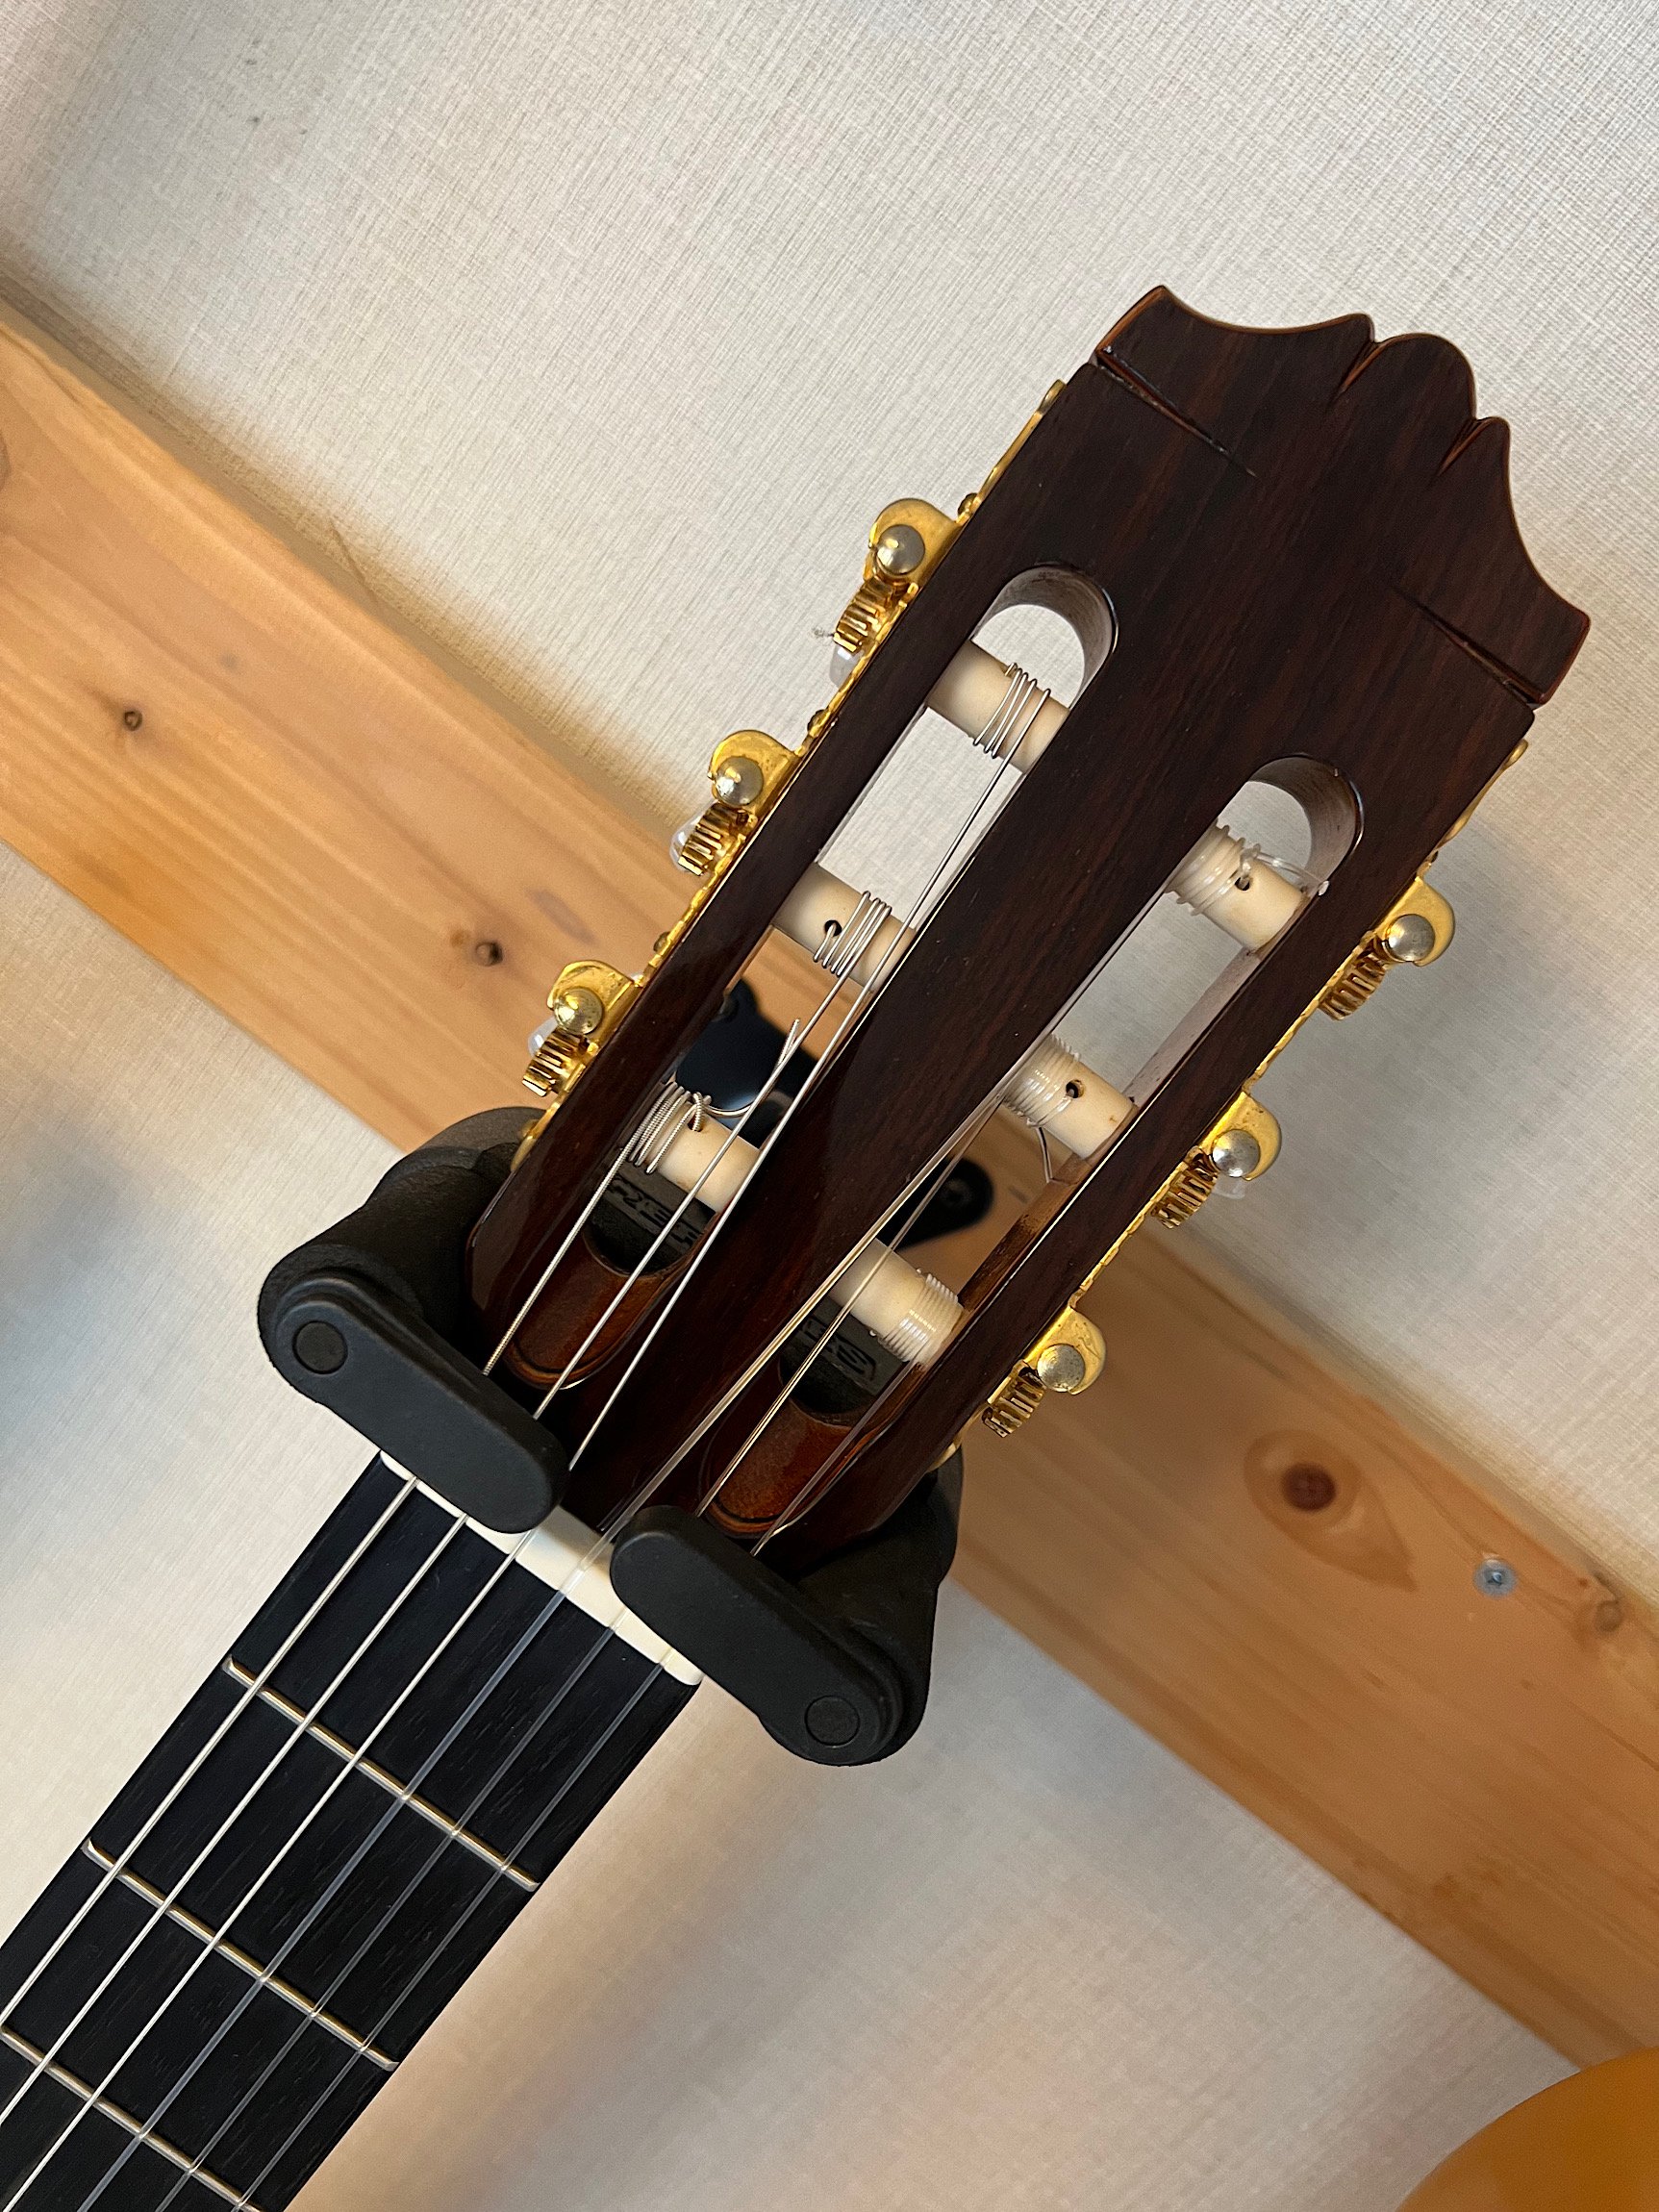 ヤマハCGX171CCAエレガットギター(新同品) - 楽器/器材